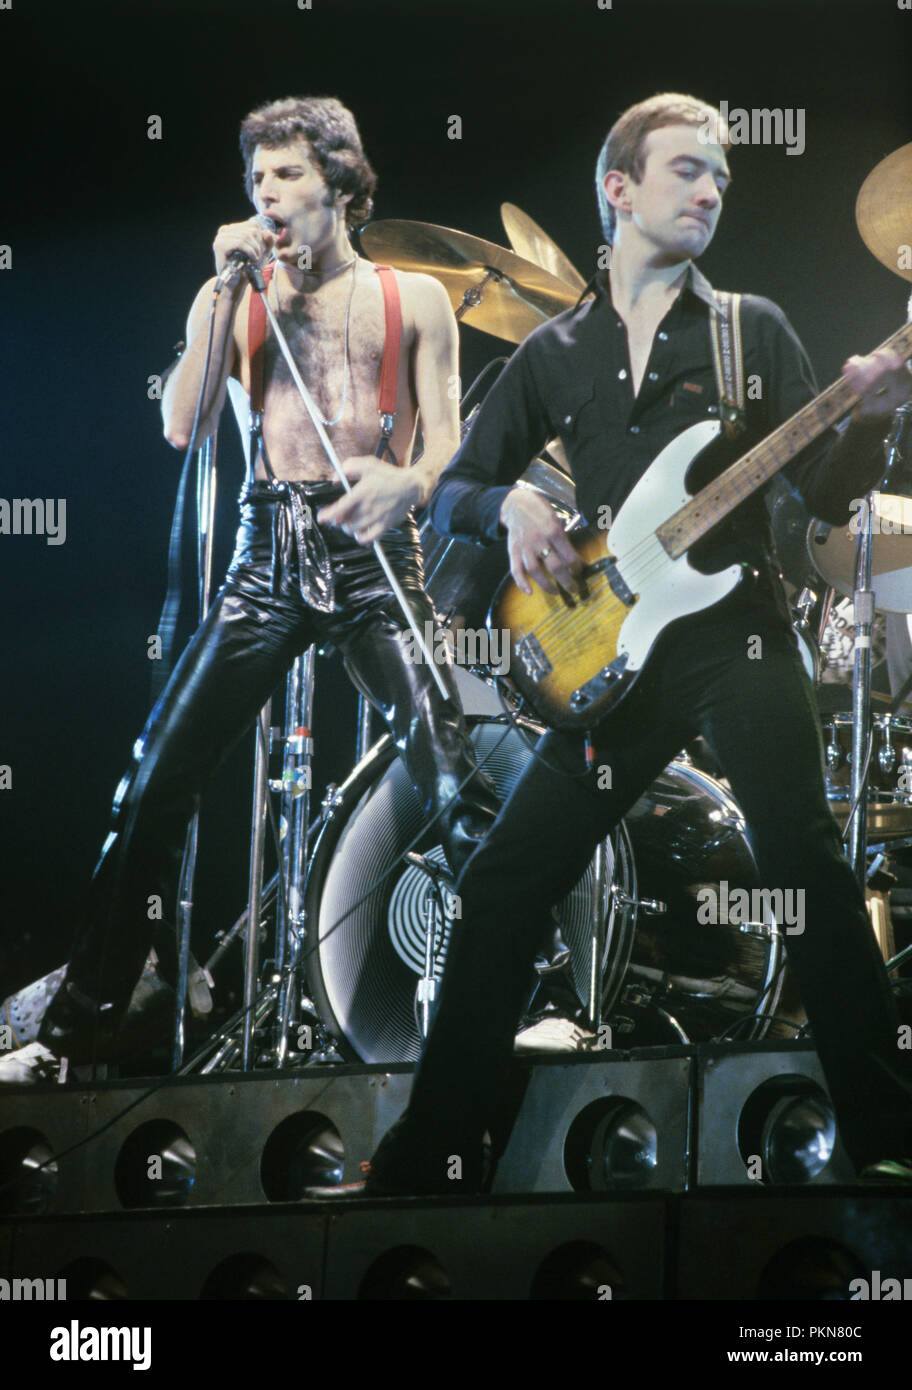 Olanda - GENNAIO 29: AHOY Foto della REGINA, Freddie Mercury, John Deacon & Brian May esibirsi sul palco (Foto Gijsbert Hanekroot) Foto Stock